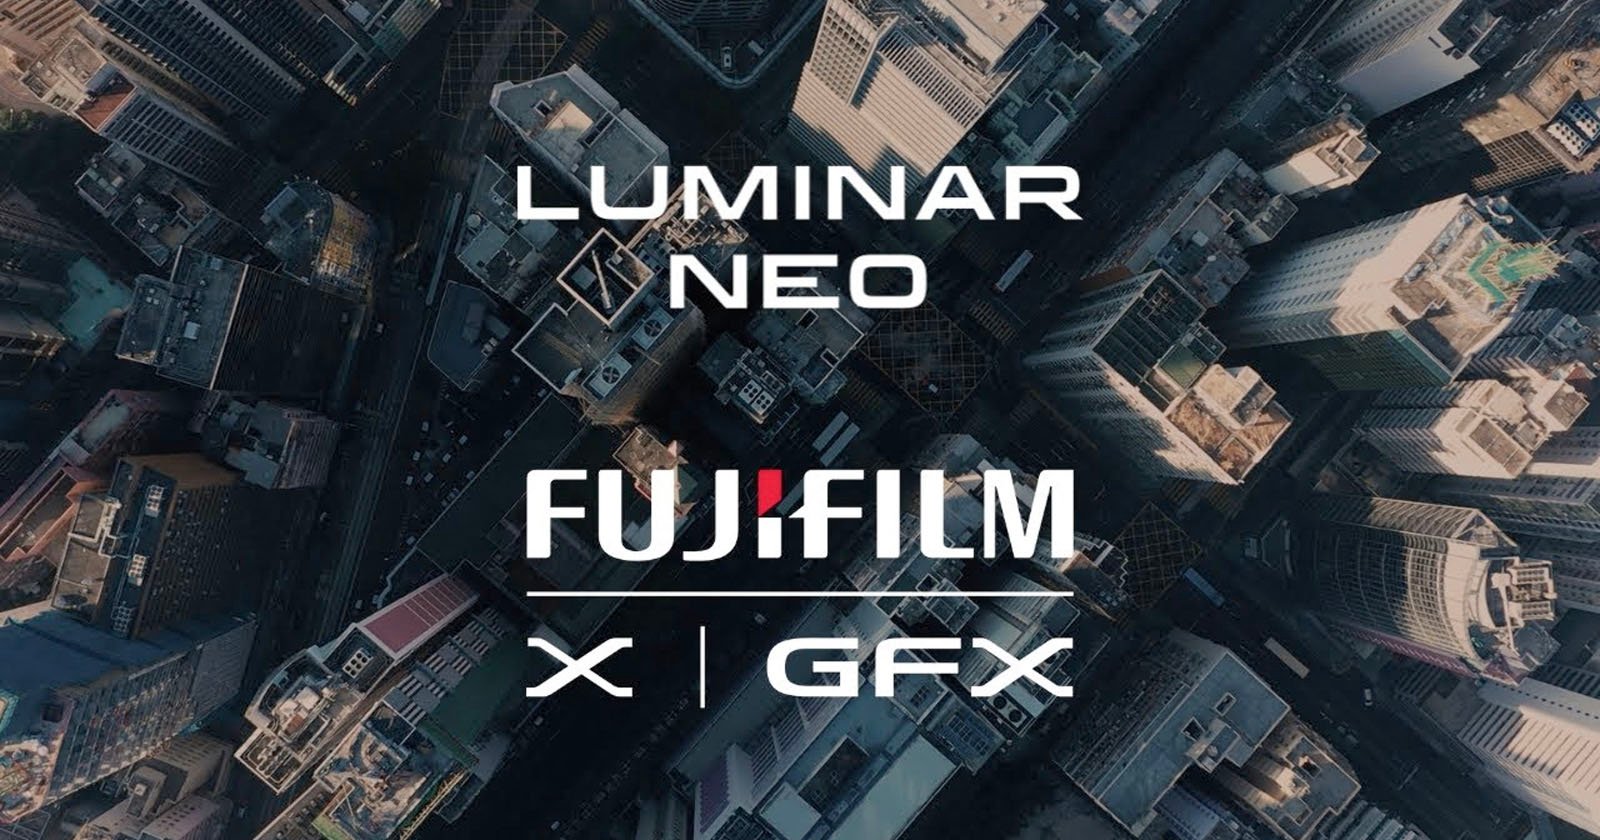 Fujifilm and Skylum are Hosting 50 Free Photo Walks Across the U.S.